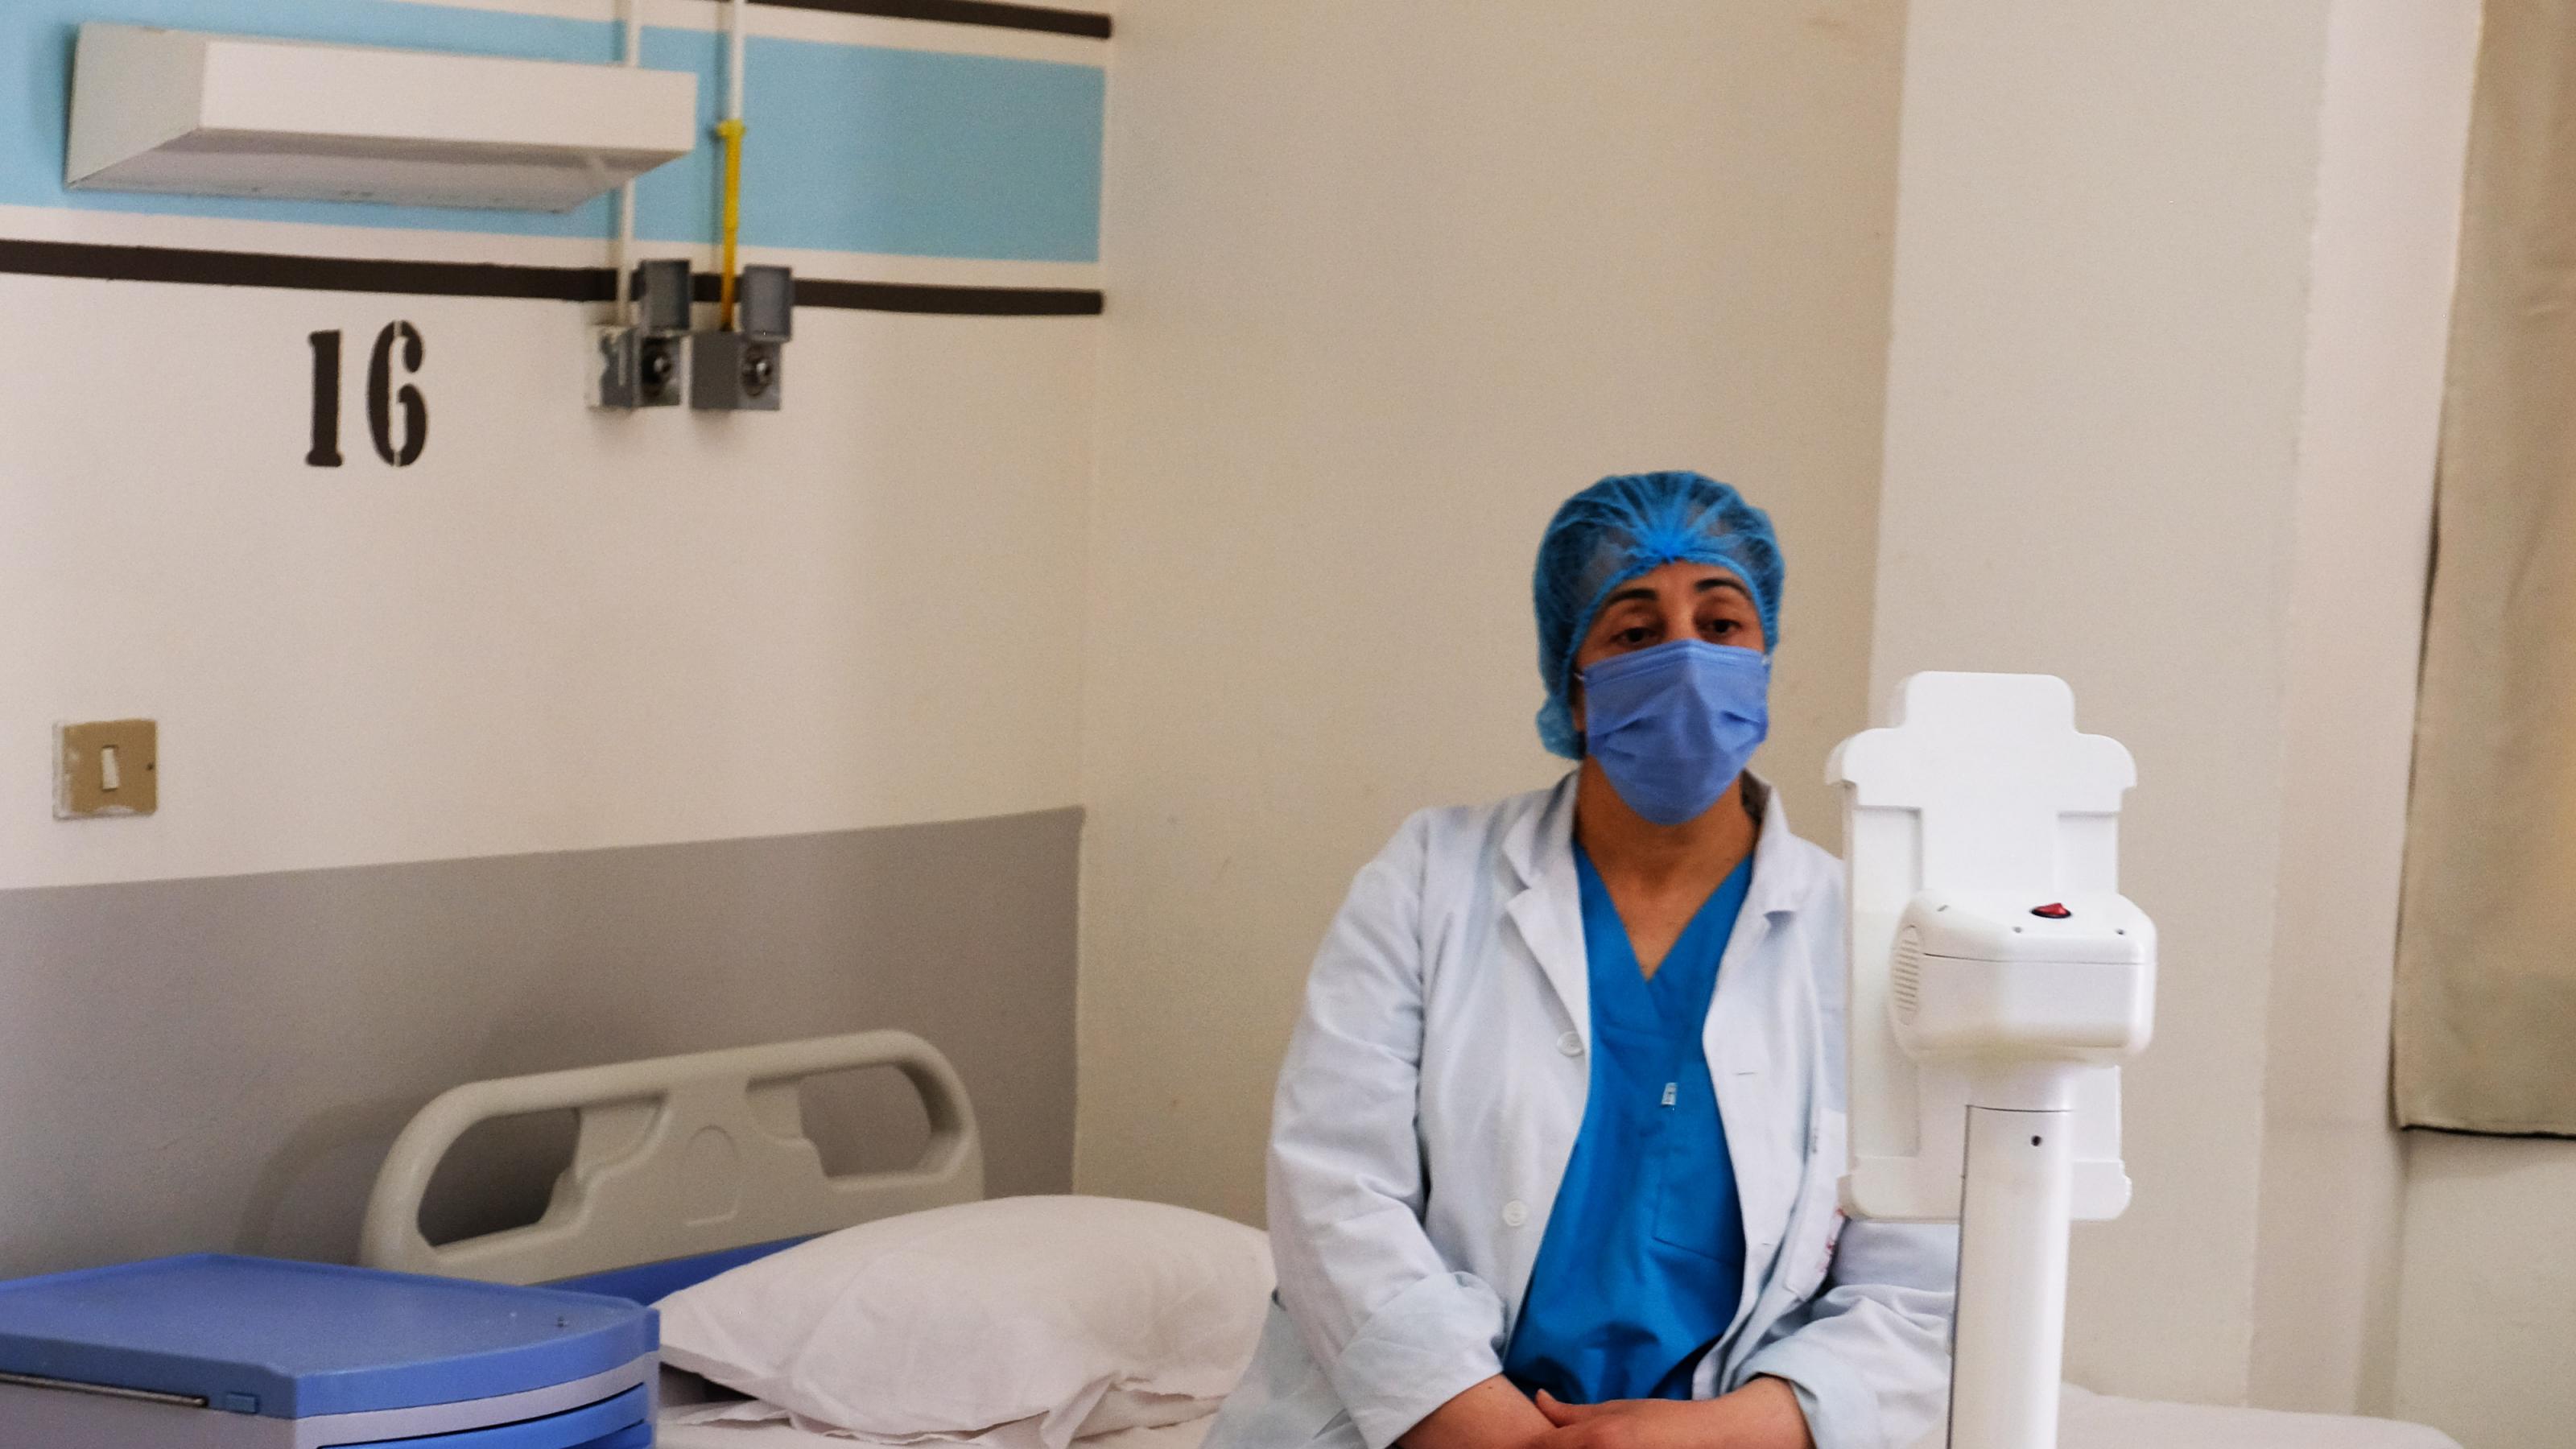 Eine Krankenpflegerin mit Kittel und Maske sitzt auf einem Krankenbett und schaut einen kleinen Roboter an.